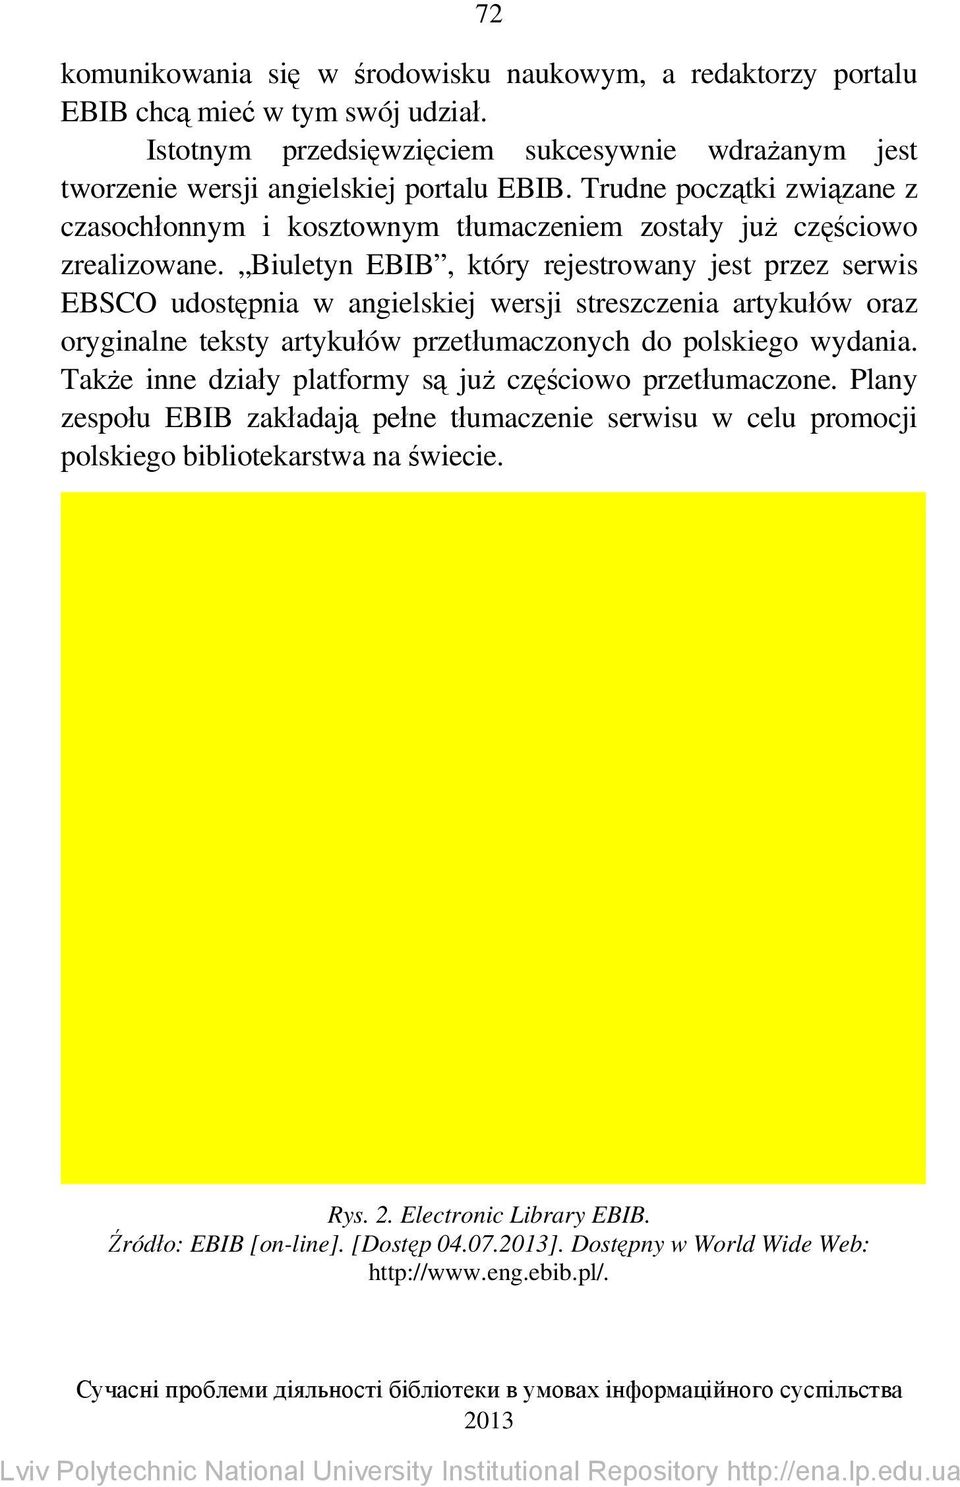 Biuletyn EBIB, który rejestrowany jest przez serwis EBSCO udostępnia w angielskiej wersji streszczenia artykułów oraz oryginalne teksty artykułów przetłumaczonych do polskiego wydania.